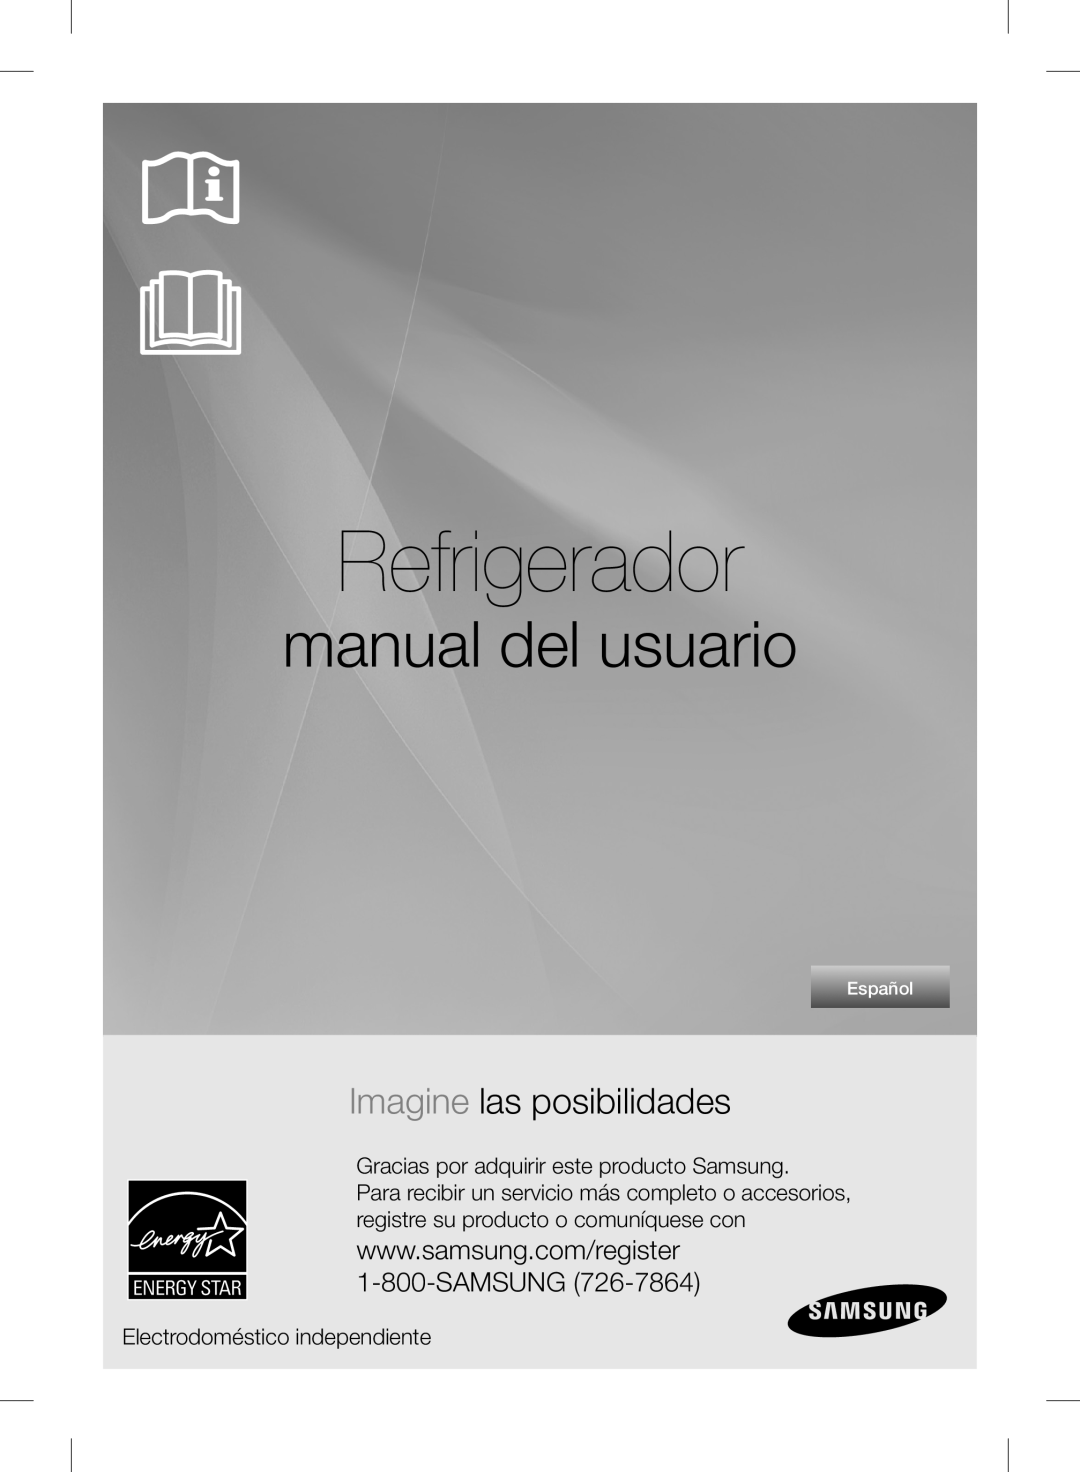 Samsung RF24FSEDBSR Refrigerador, manual del usuario, Imagine las posibilidades, Electrodoméstico independiente, Español 